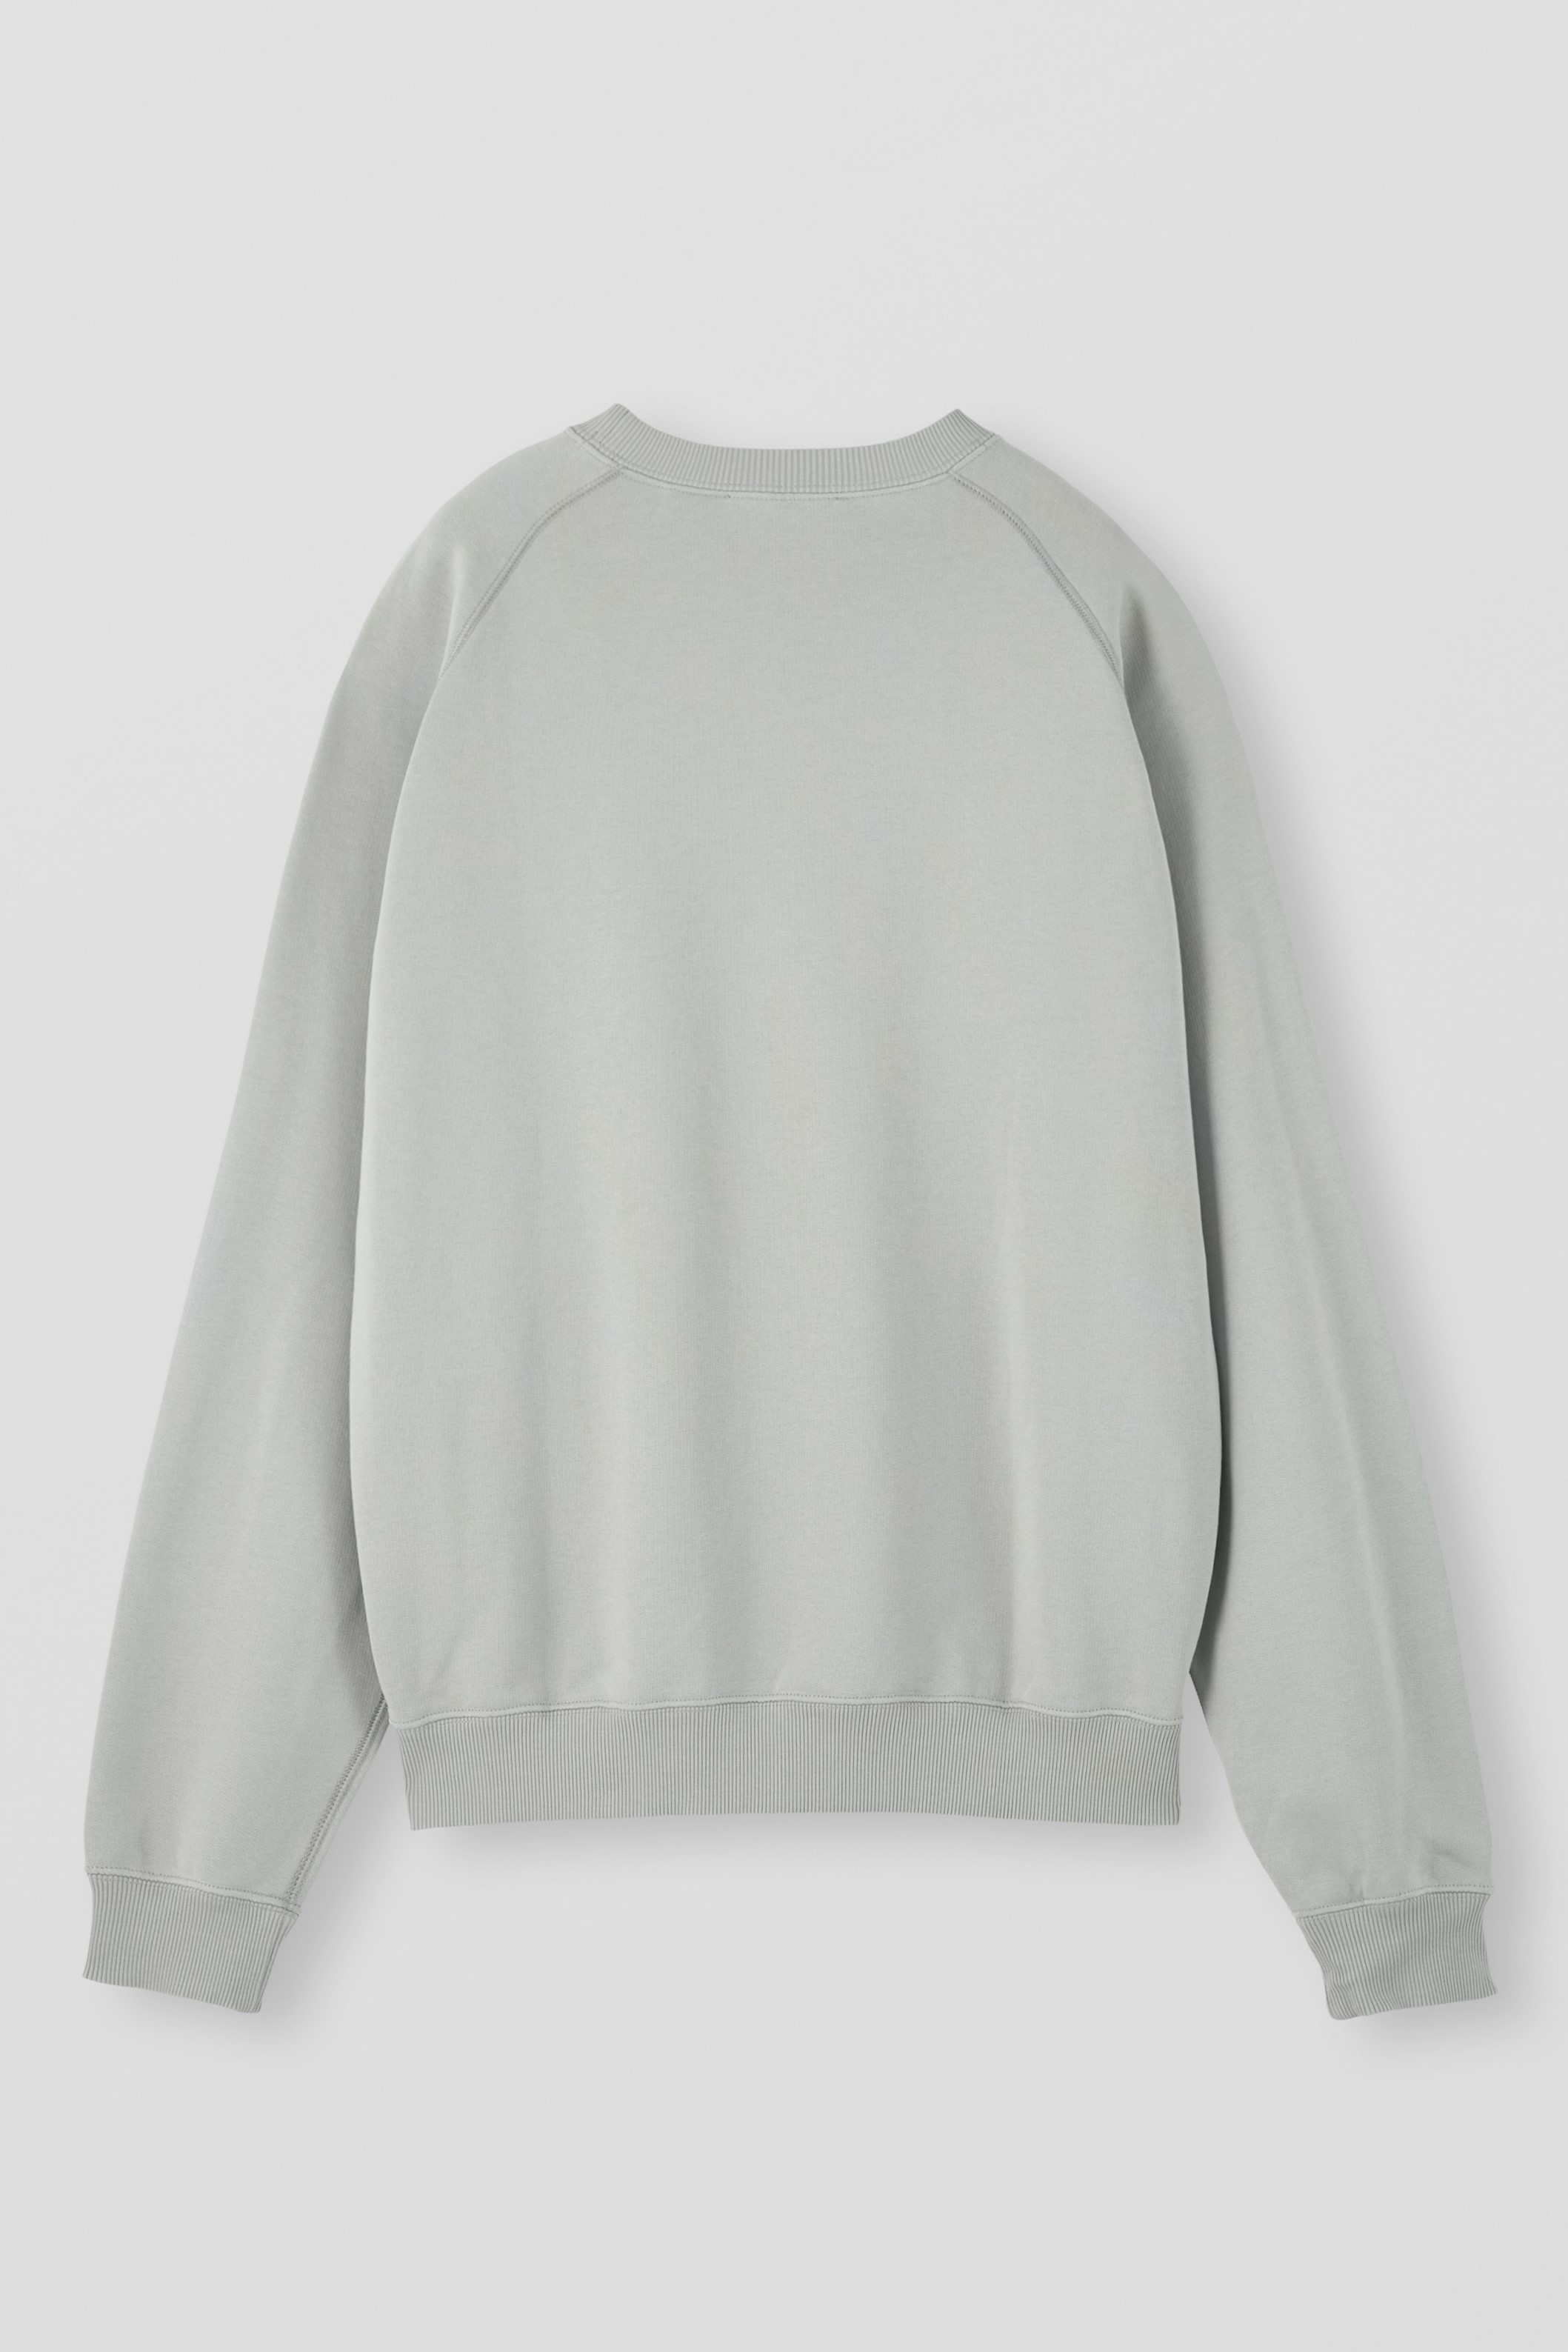 APPLIED ART FORMS Raglan Sweater in Ghost Grey